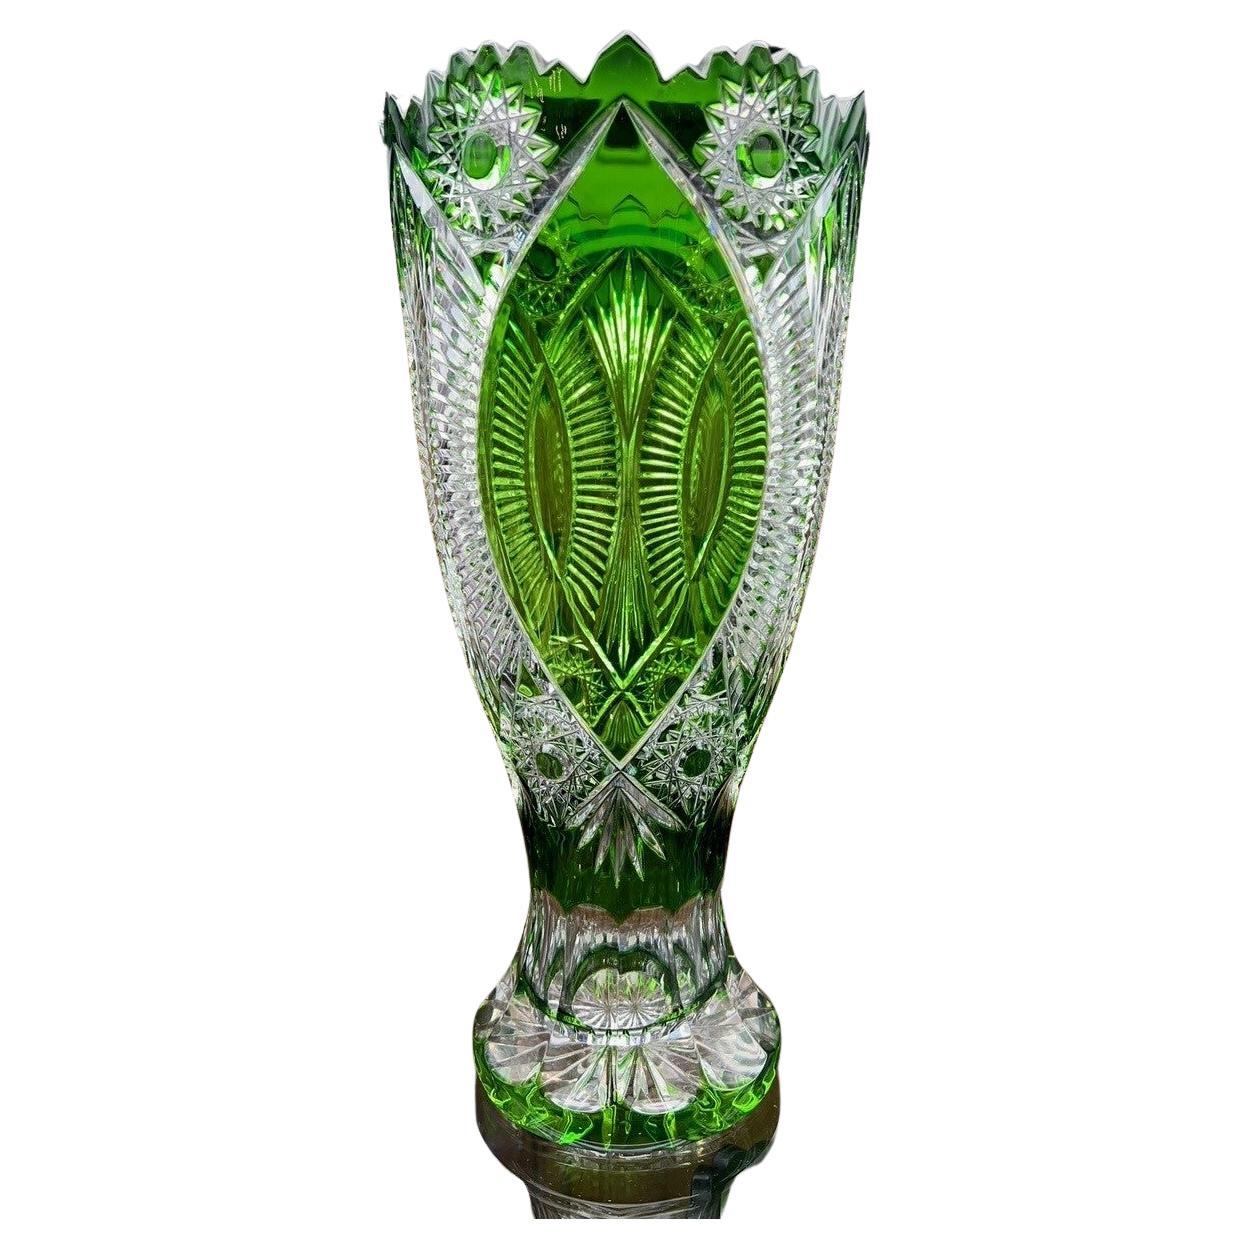  Hand Cut Lead Crystal Vase by Caesar Crystal Bohemiae Co. Czech.   For Sale